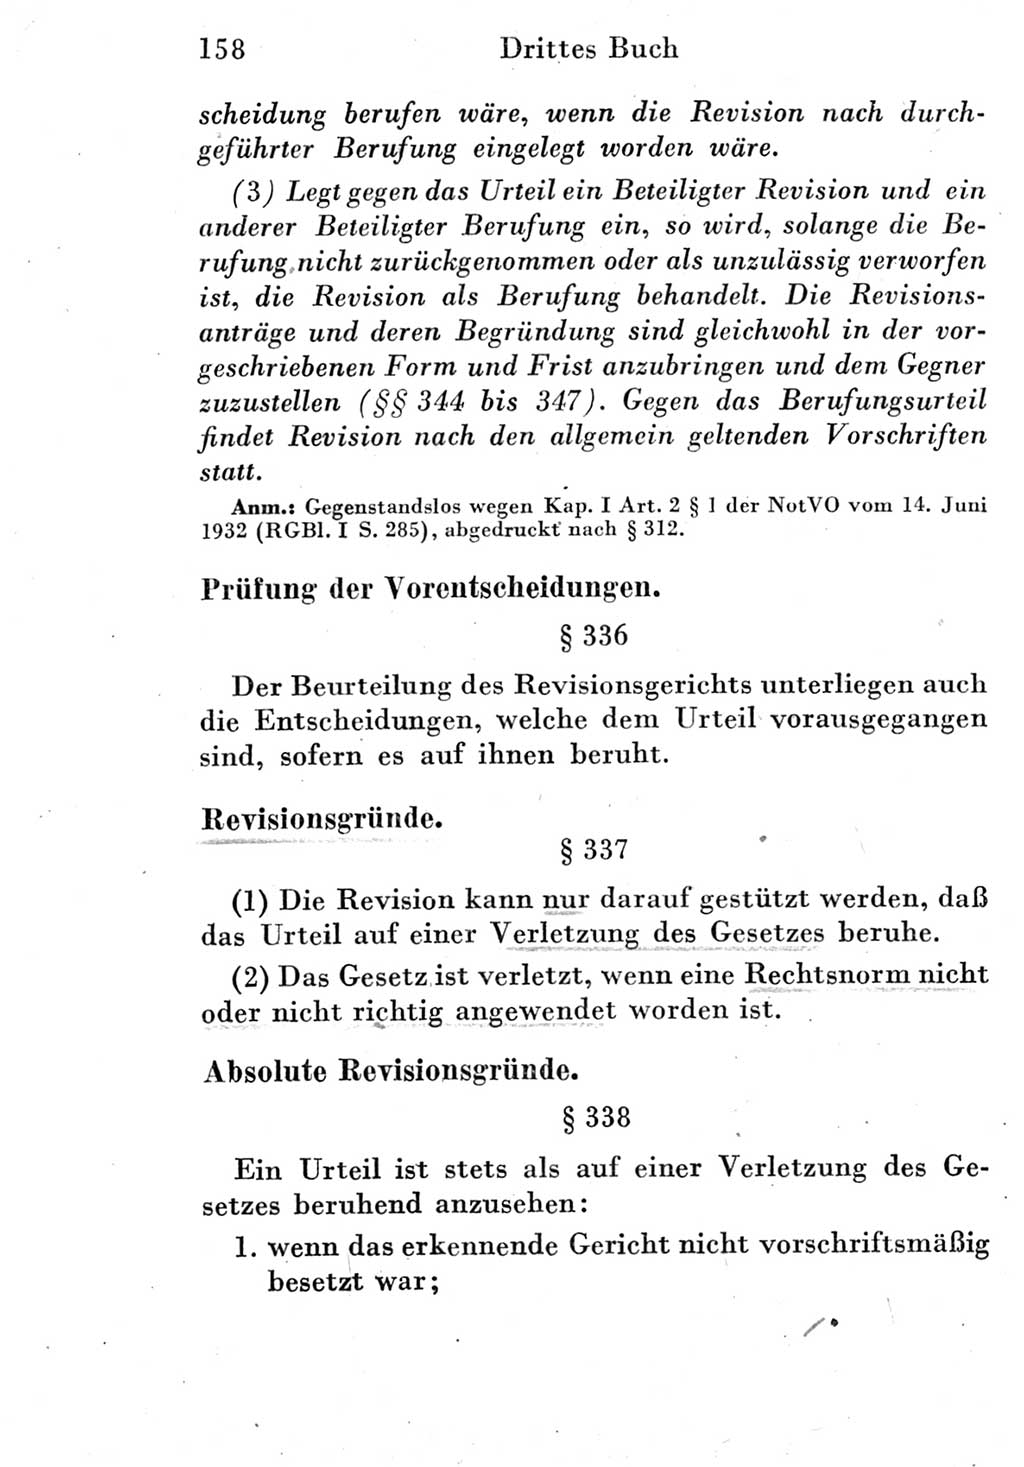 Strafprozeßordnung (StPO), Gerichtsverfassungsgesetz (GVG) und zahlreiche Nebengesetze der Deutschen Demokratischen Republik (DDR) 1950, Seite 158 (StPO GVG Ges. DDR 1950, S. 158)